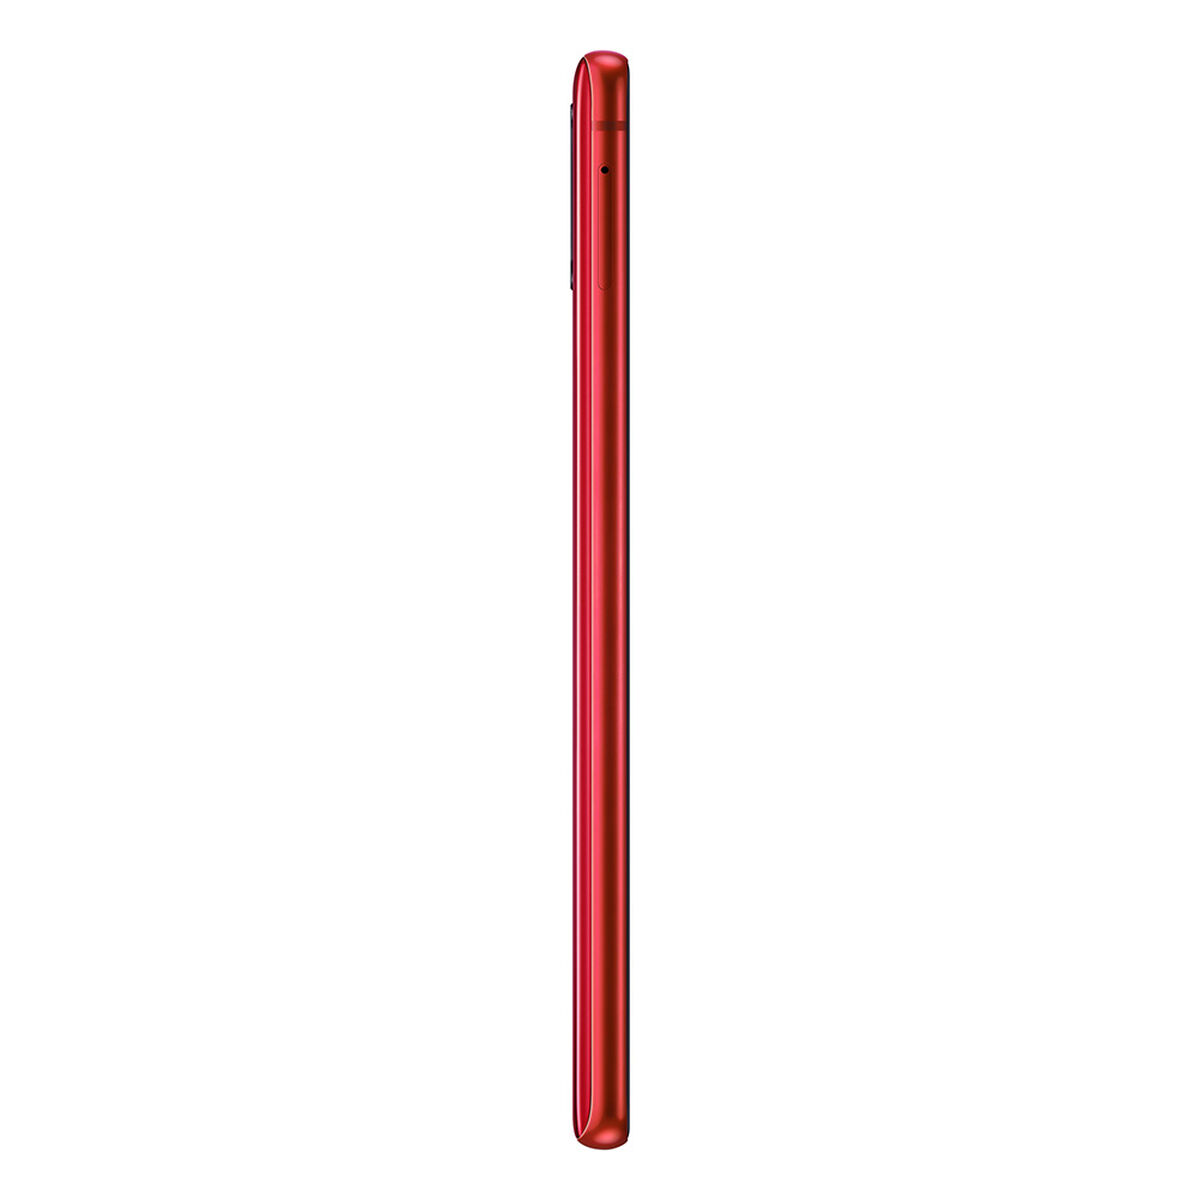 Celular Samsung Note 10 Lite 128GB 6,7" Rojo Liberado